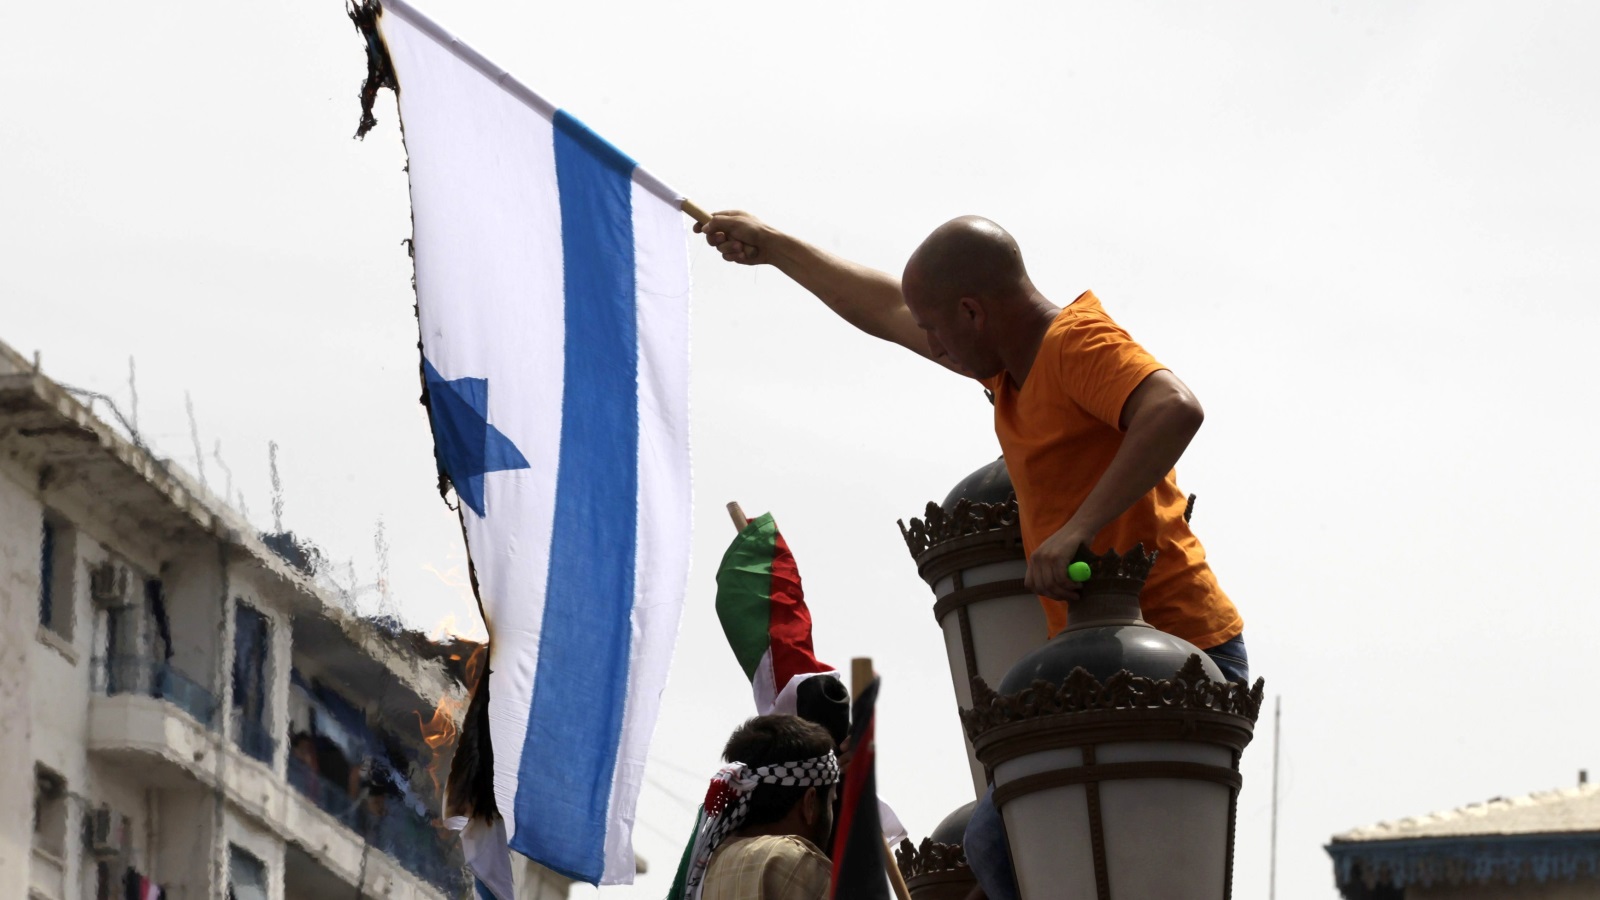  شاب جزائري يقوم بحرق العلم الإسرائيلي خلال مظاهرات للتضامن مع الفلسطينيين (رويترز)